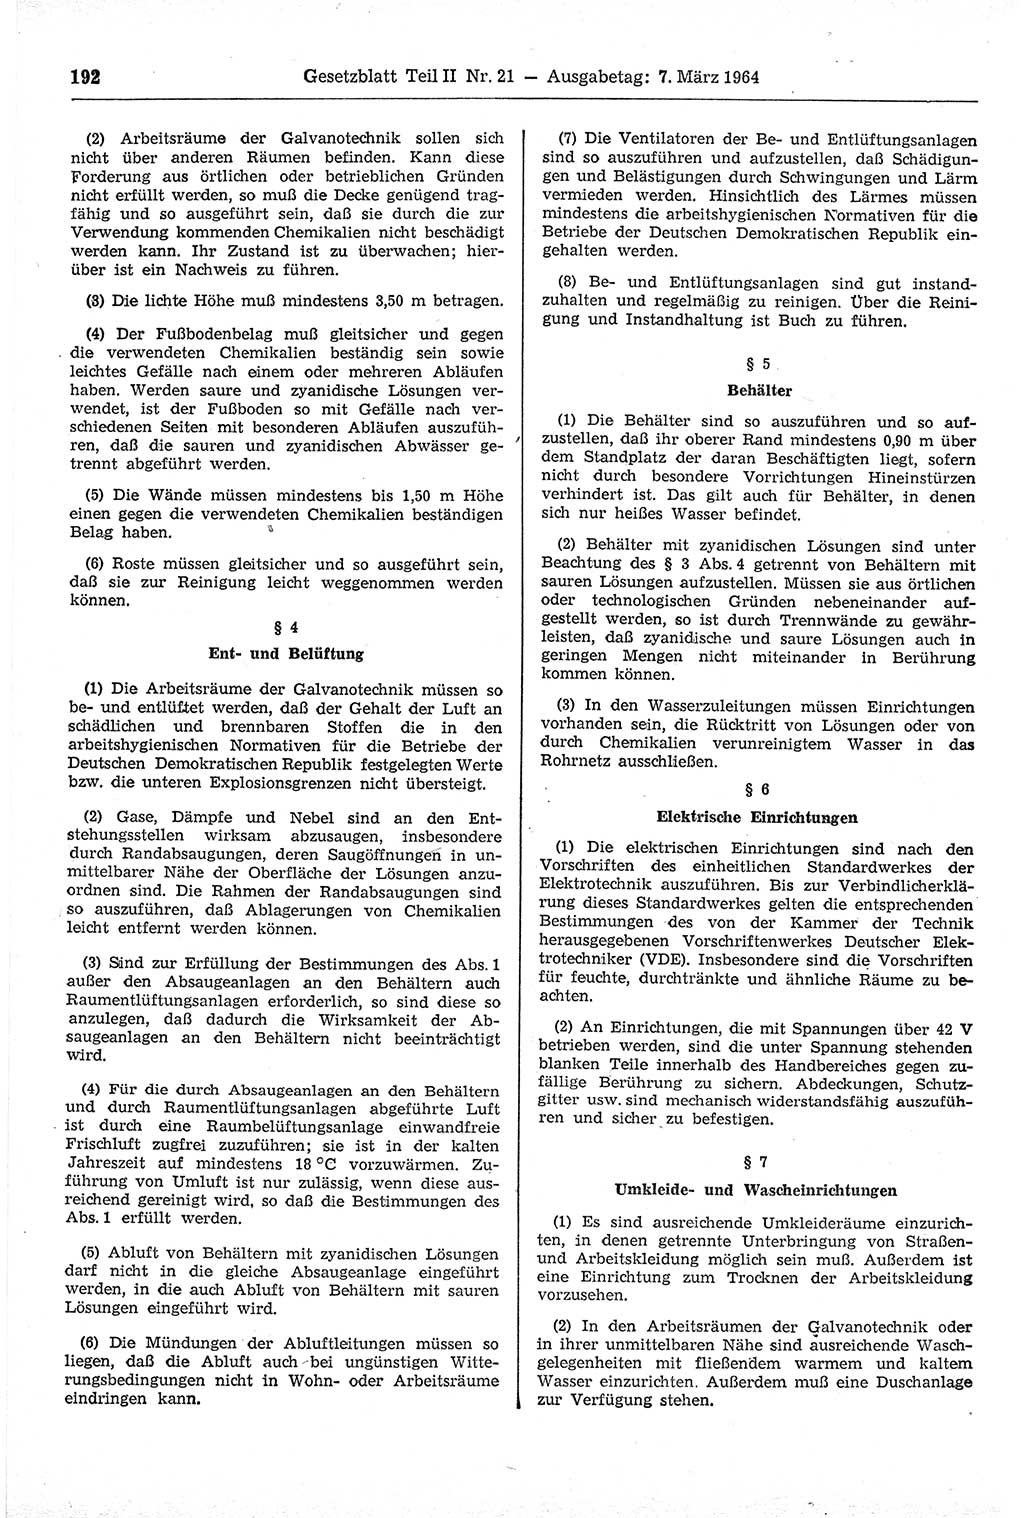 Gesetzblatt (GBl.) der Deutschen Demokratischen Republik (DDR) Teil ⅠⅠ 1964, Seite 192 (GBl. DDR ⅠⅠ 1964, S. 192)